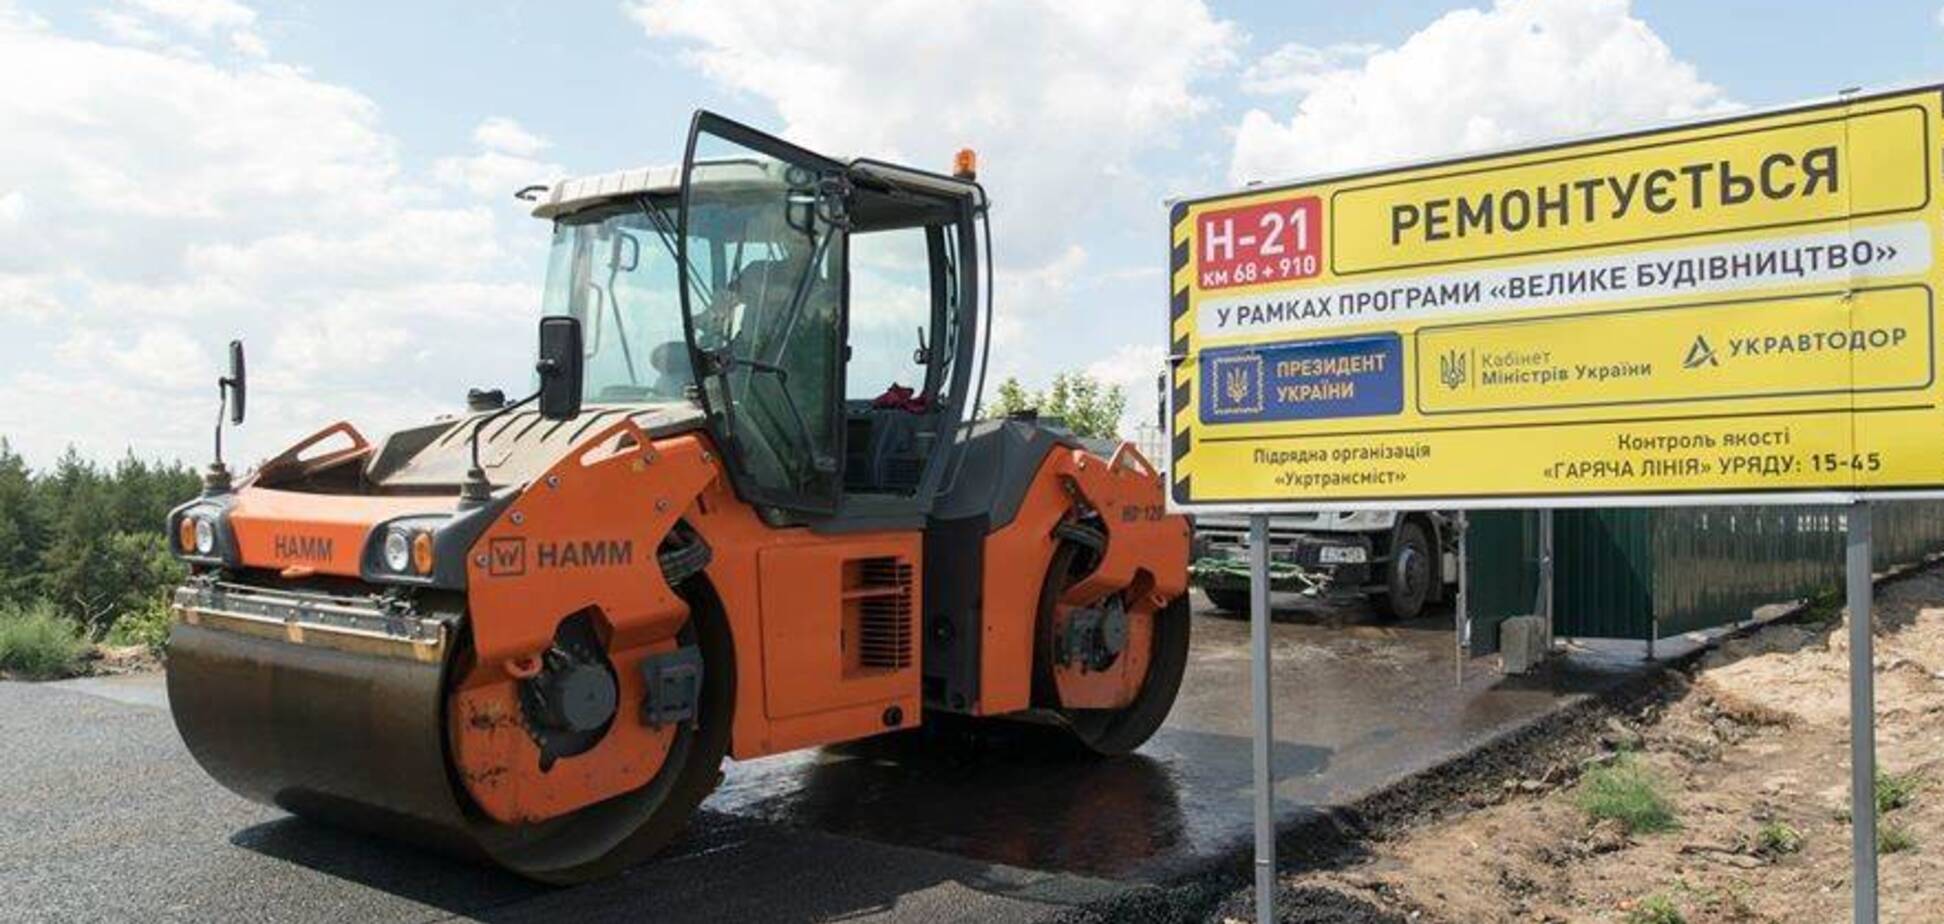 'Велике будівництво' дороги от Станицы Луганской до Северодонецка вышло на финишную прямую